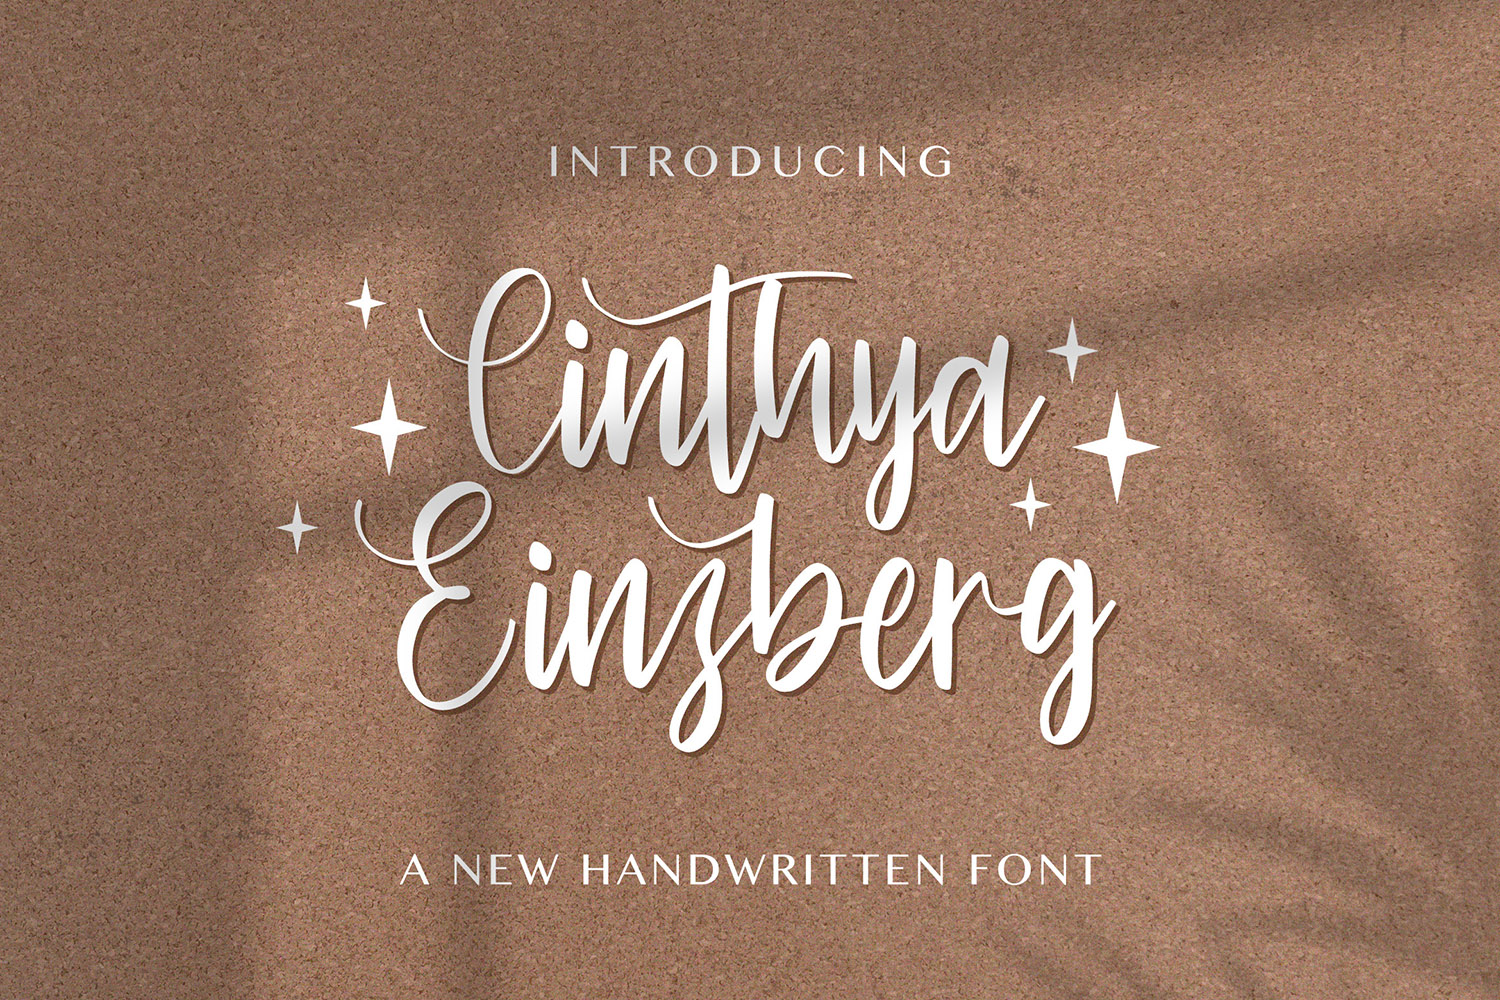 Cinthya Einzberg Free Font